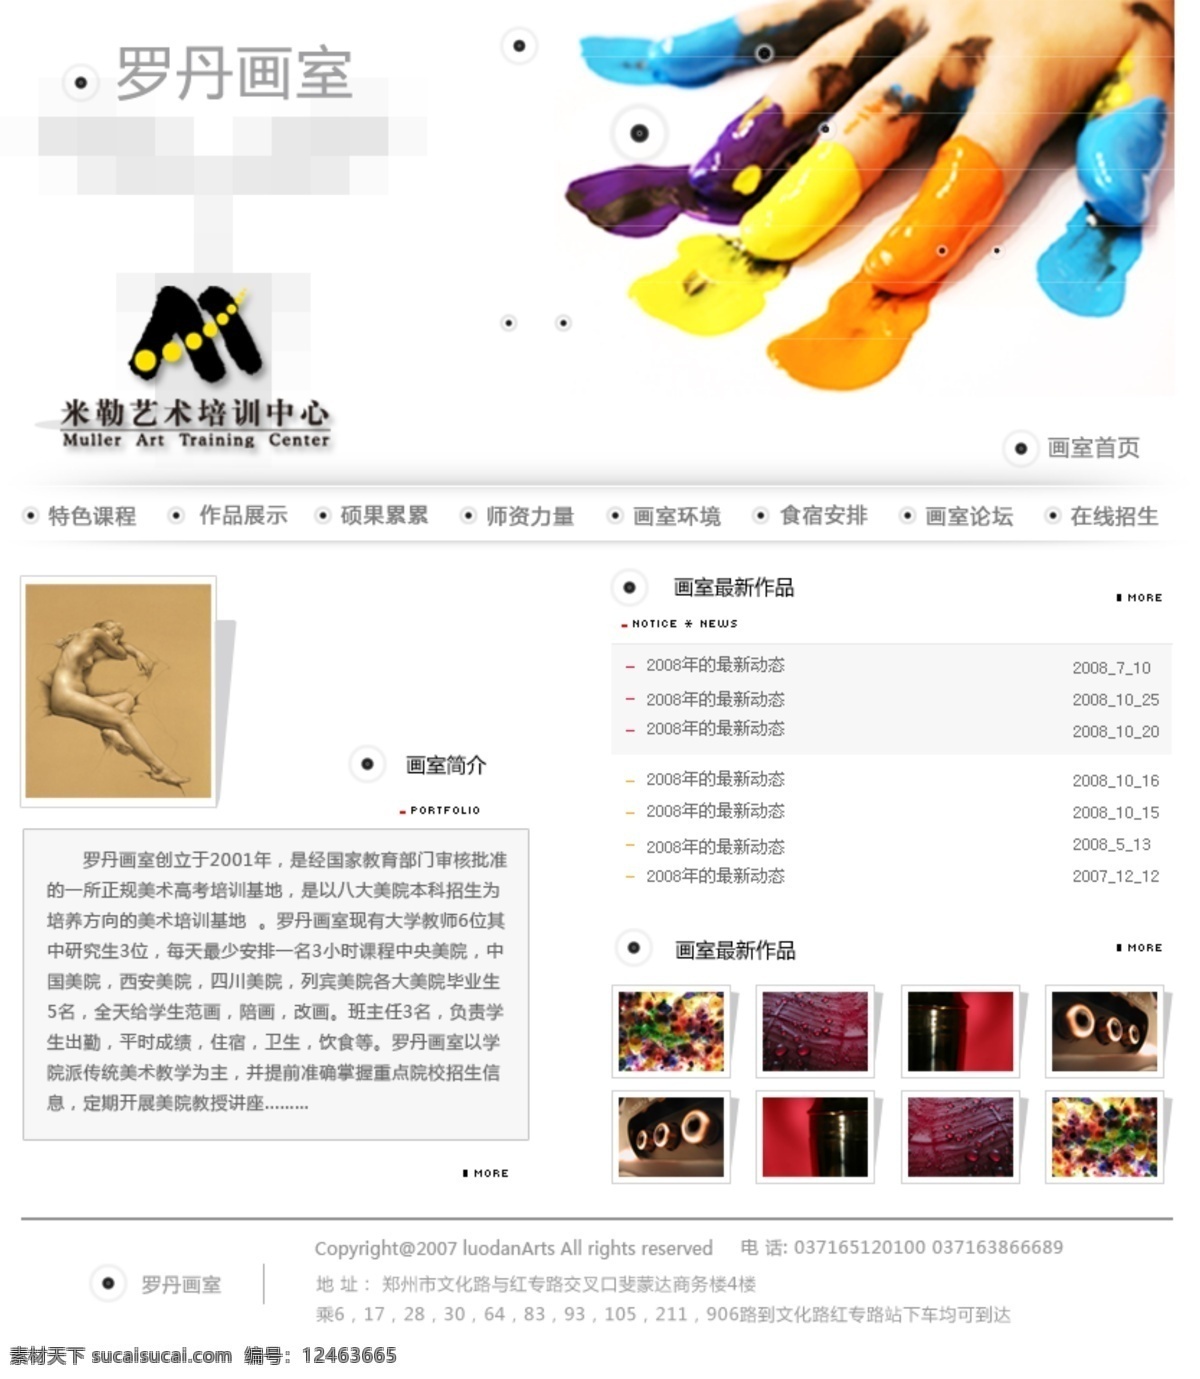 艺术 培训中心 网页设计 网页模板 源文件 中文模版 培训中心网页 网页素材